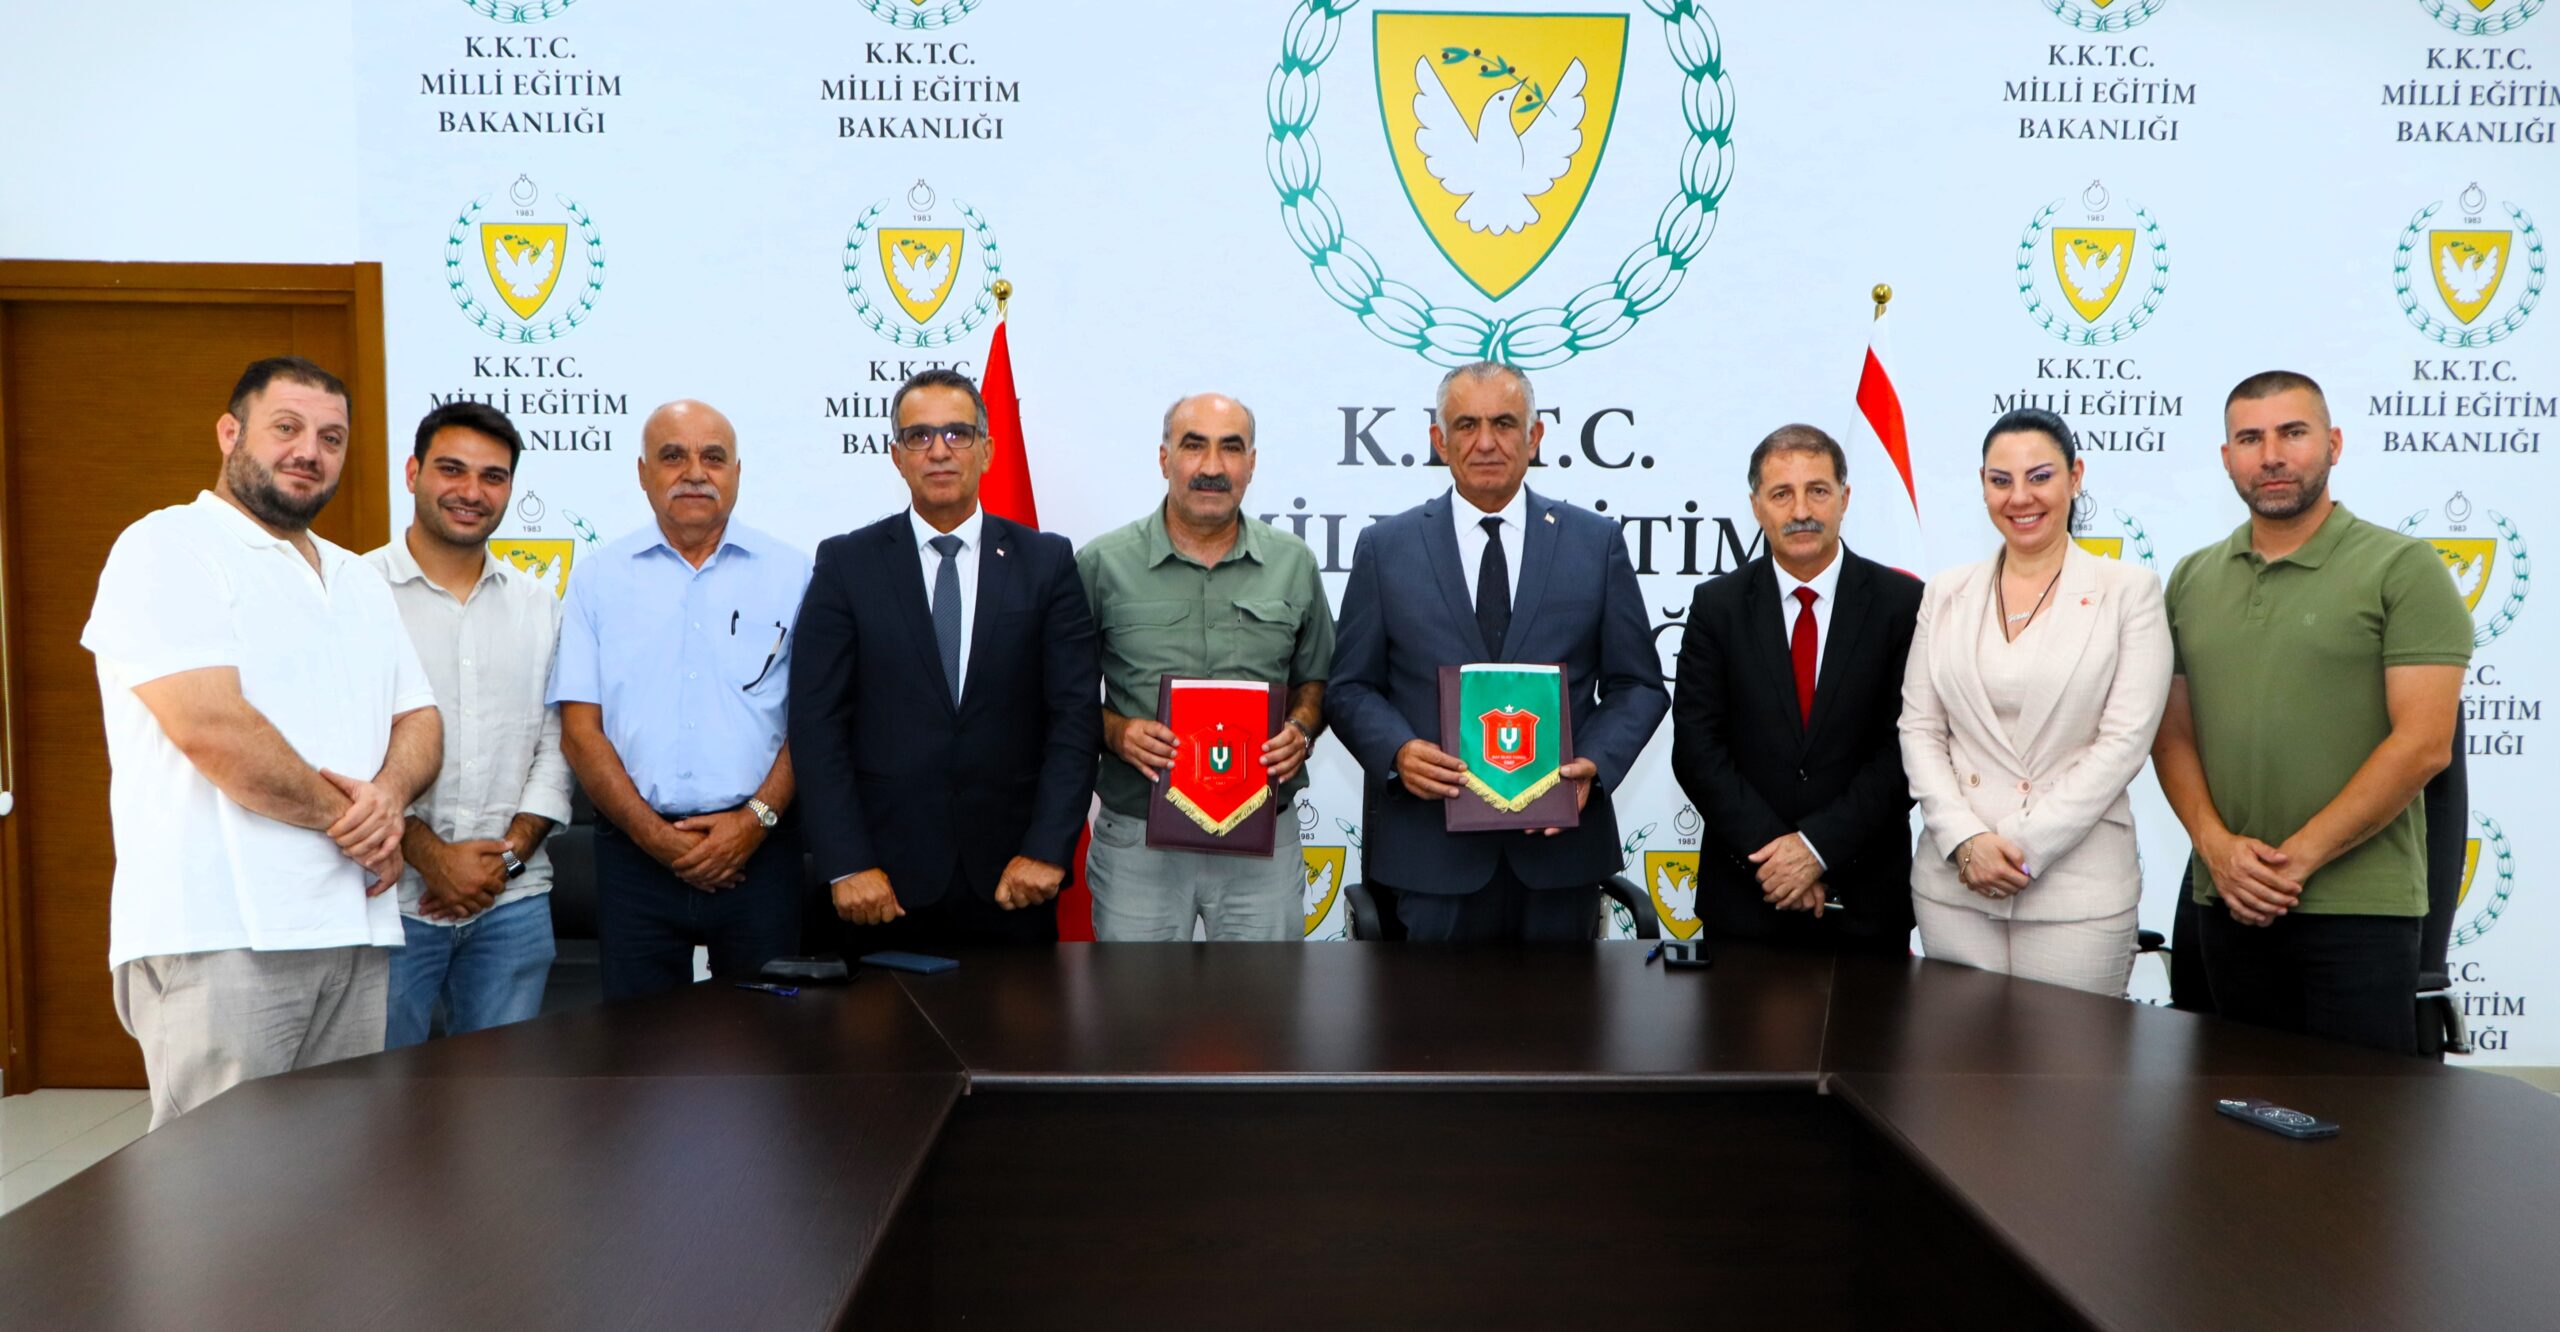 Milli Eğitim Bakanlığı ile Baf Ülkü Yurdu Spor Kulübü arasında iş birliği protokolü imzalandı